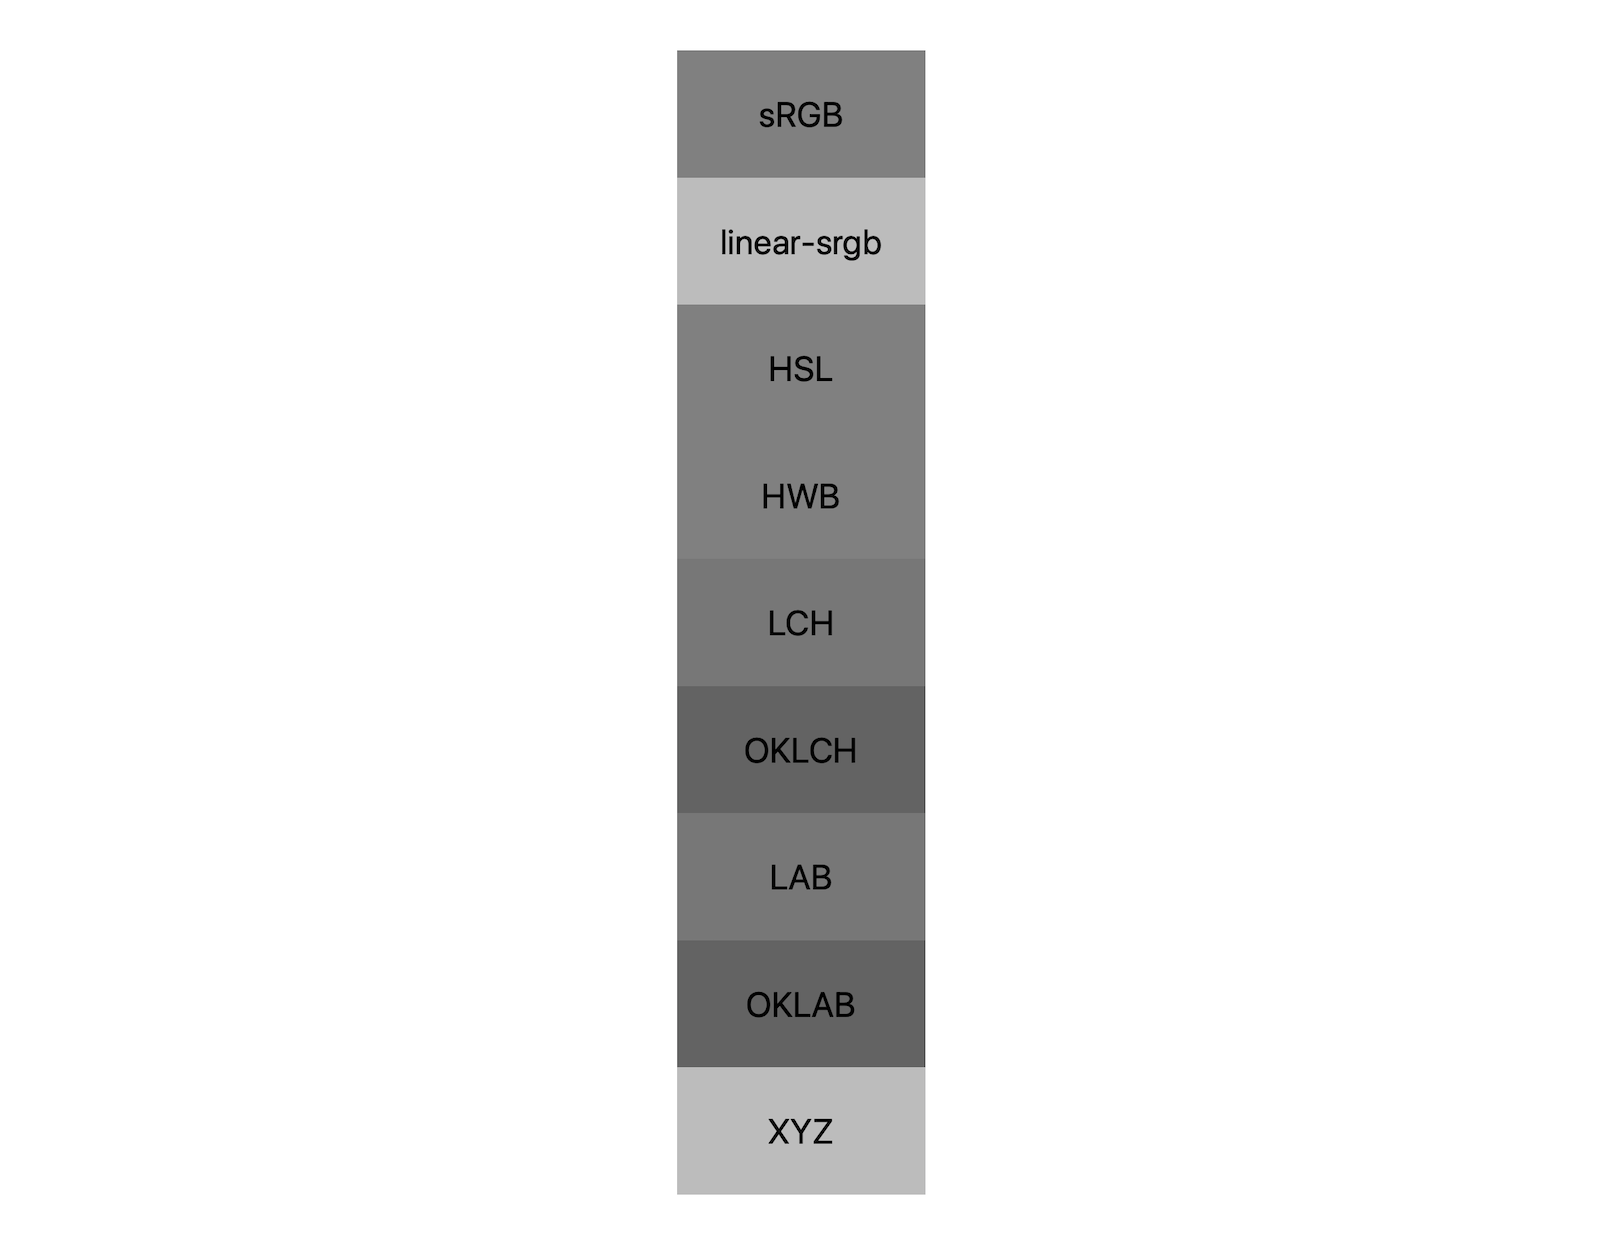 7 kleurruimten (srgb, lineair-srgb, lch, oklch, lab, oklab, xyz) tonen elk hun resultaten van het mengen van zwart en wit. Er worden grofweg 5 verschillende tinten weergegeven, wat aantoont dat elke kleurruimte zelfs anders tot grijs zal overgaan.